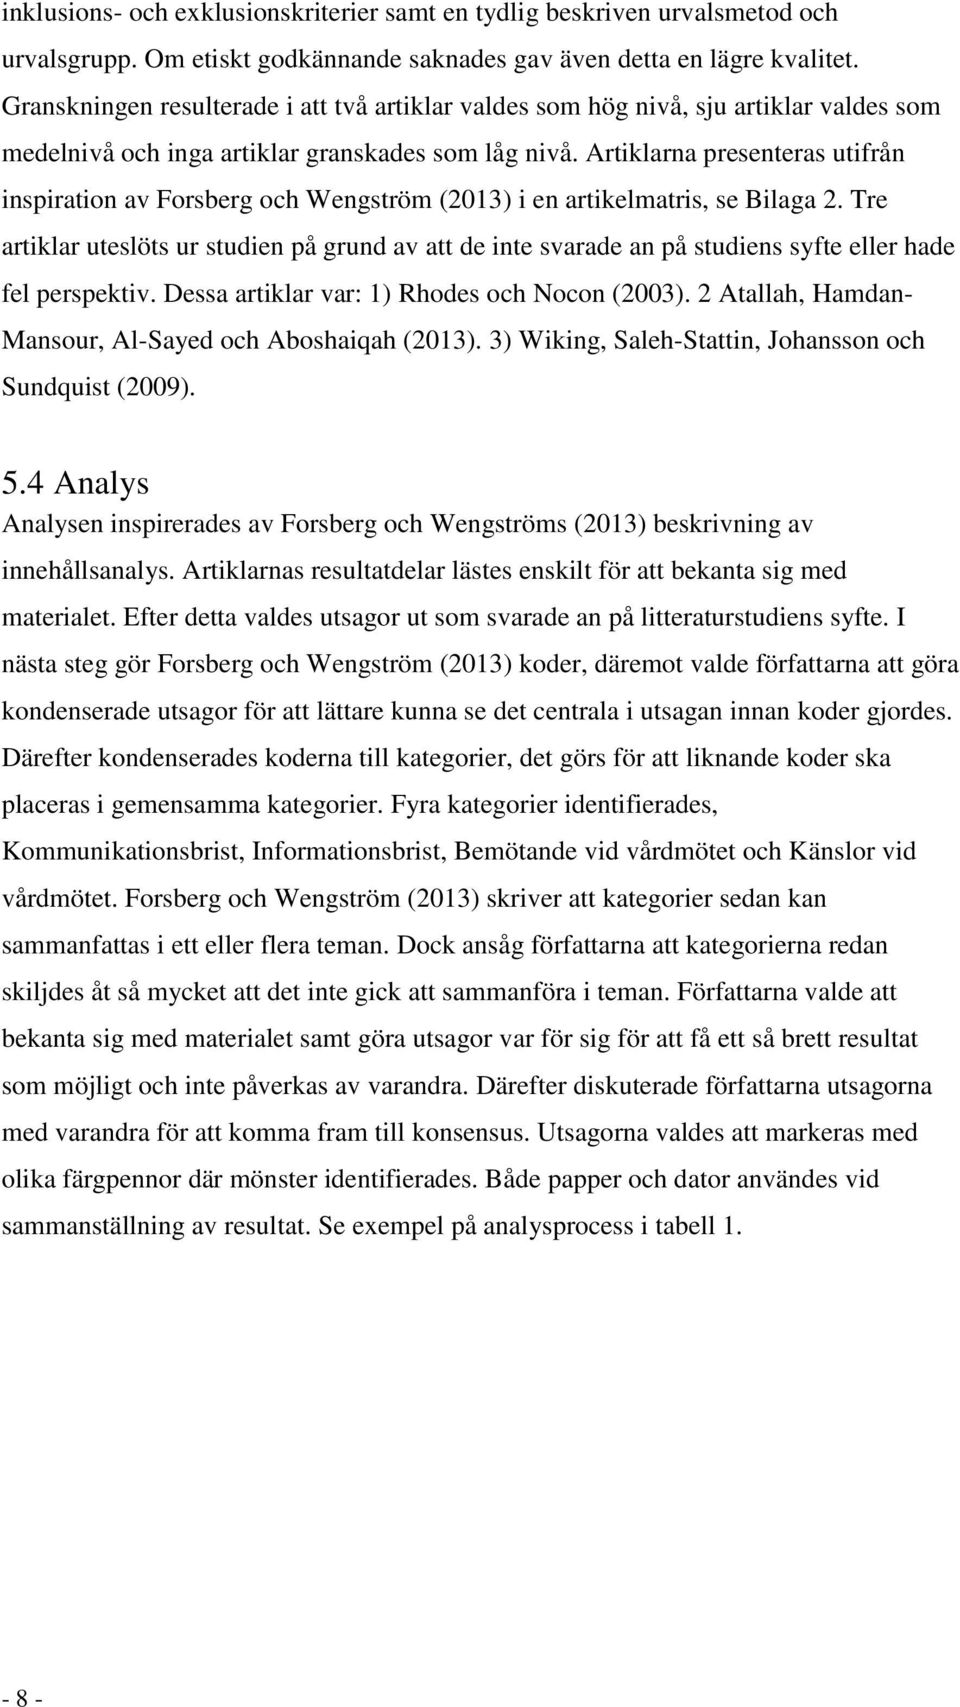 Artiklarna presenteras utifrån inspiration av Forsberg och Wengström (2013) i en artikelmatris, se Bilaga 2.